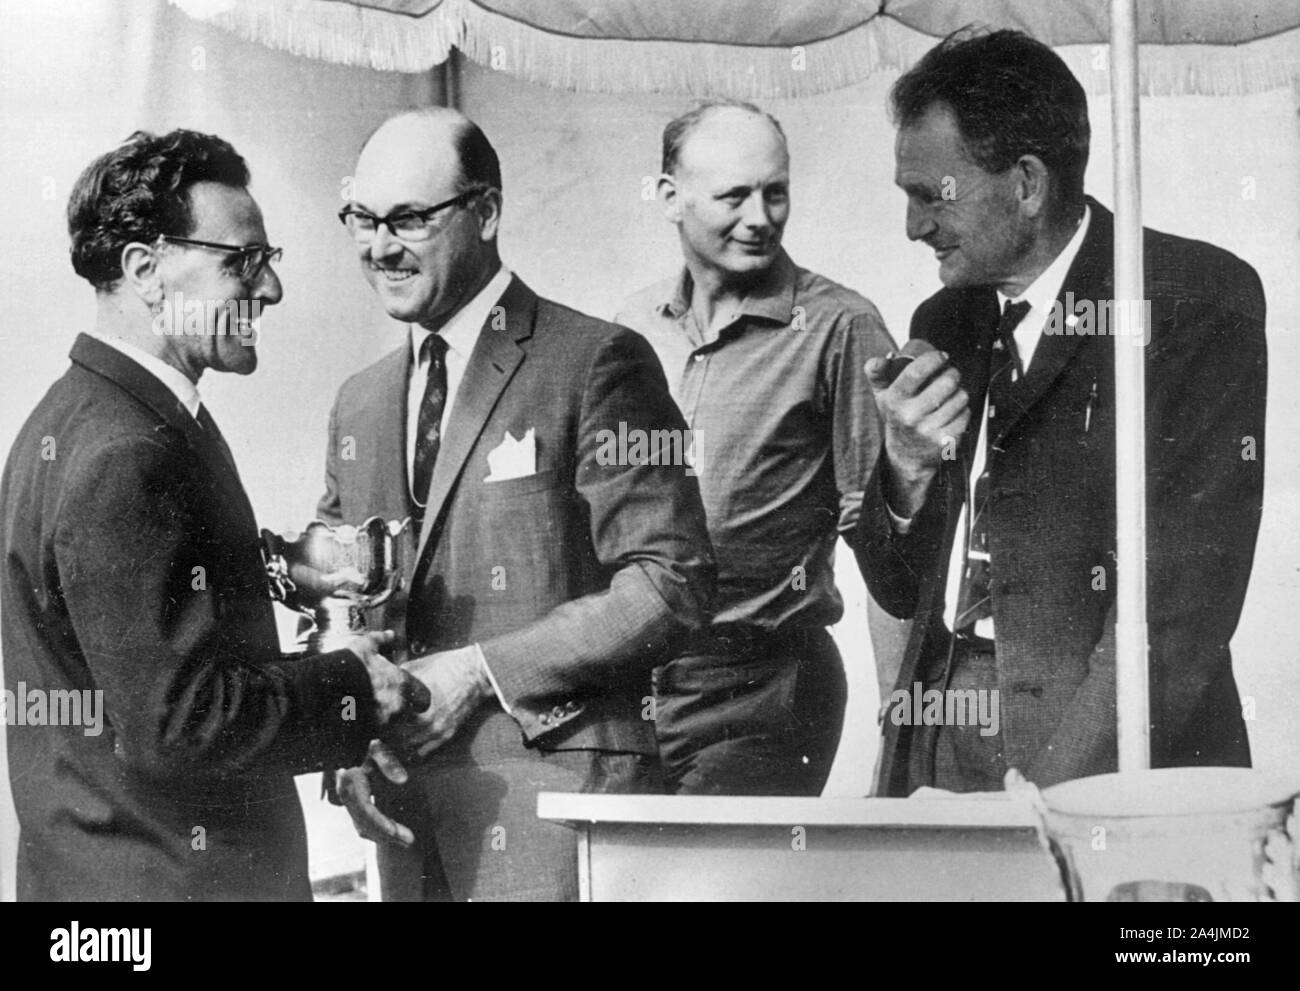 Murray Walker 1963, Lord Montagu im Hintergrund. Stockfoto